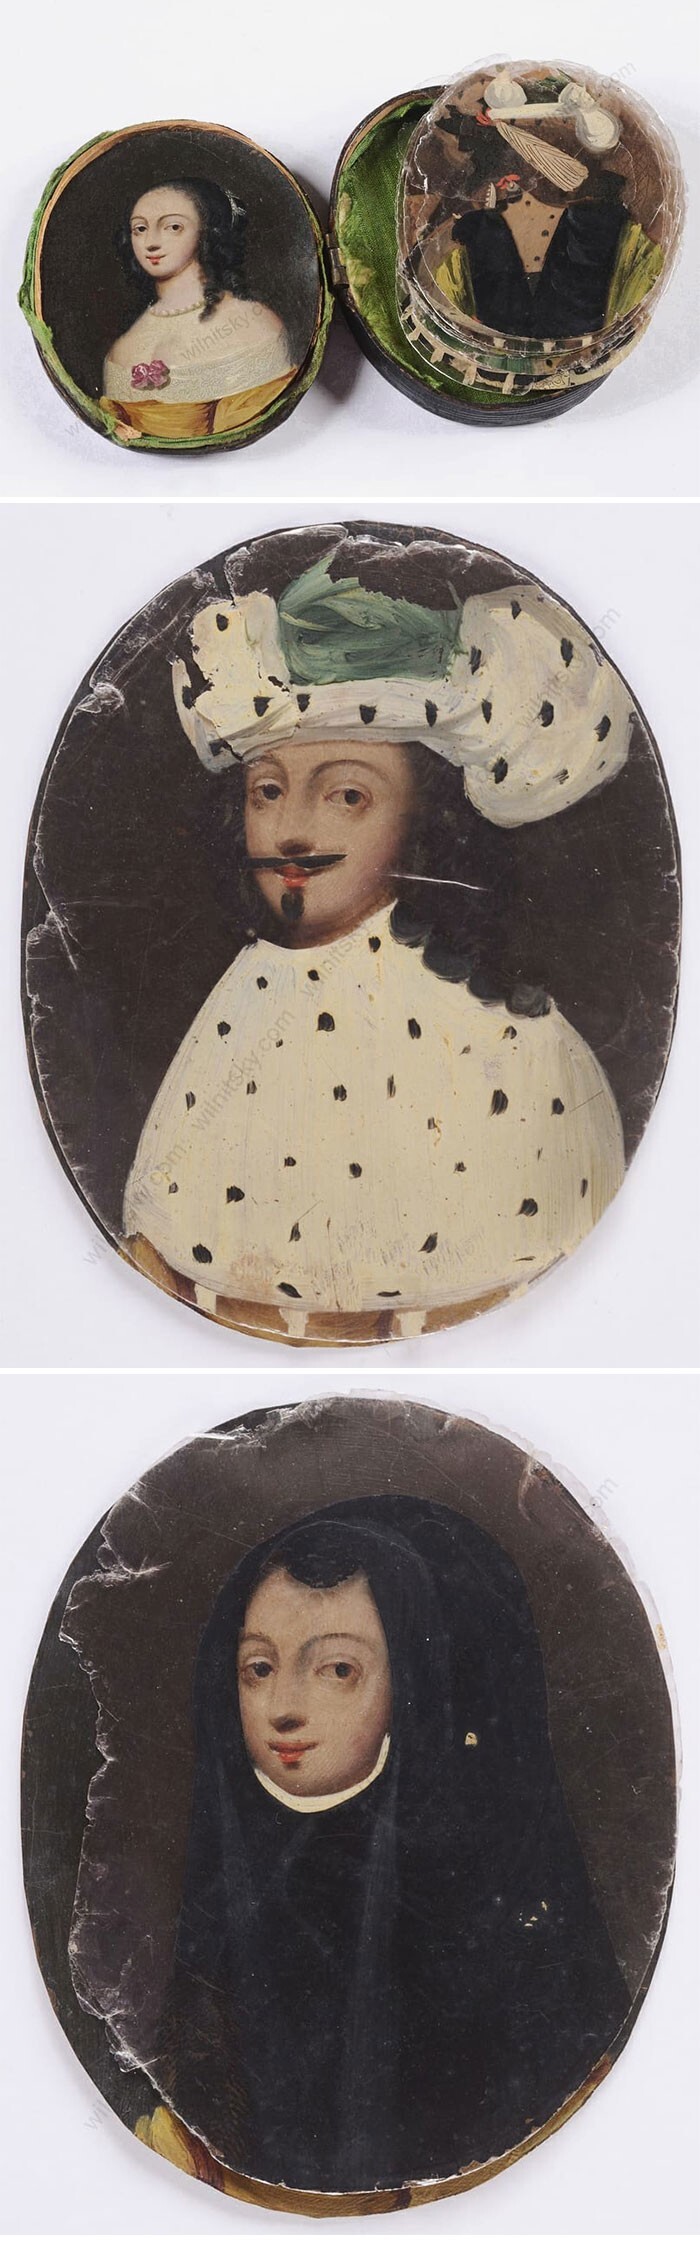 2. Многоликая женщина! Необычное увлечение середины 1600-х годов: миниатюрные масляные портреты, на которые с помощью прозрачных кусочков слюды накладывали различные костюмы